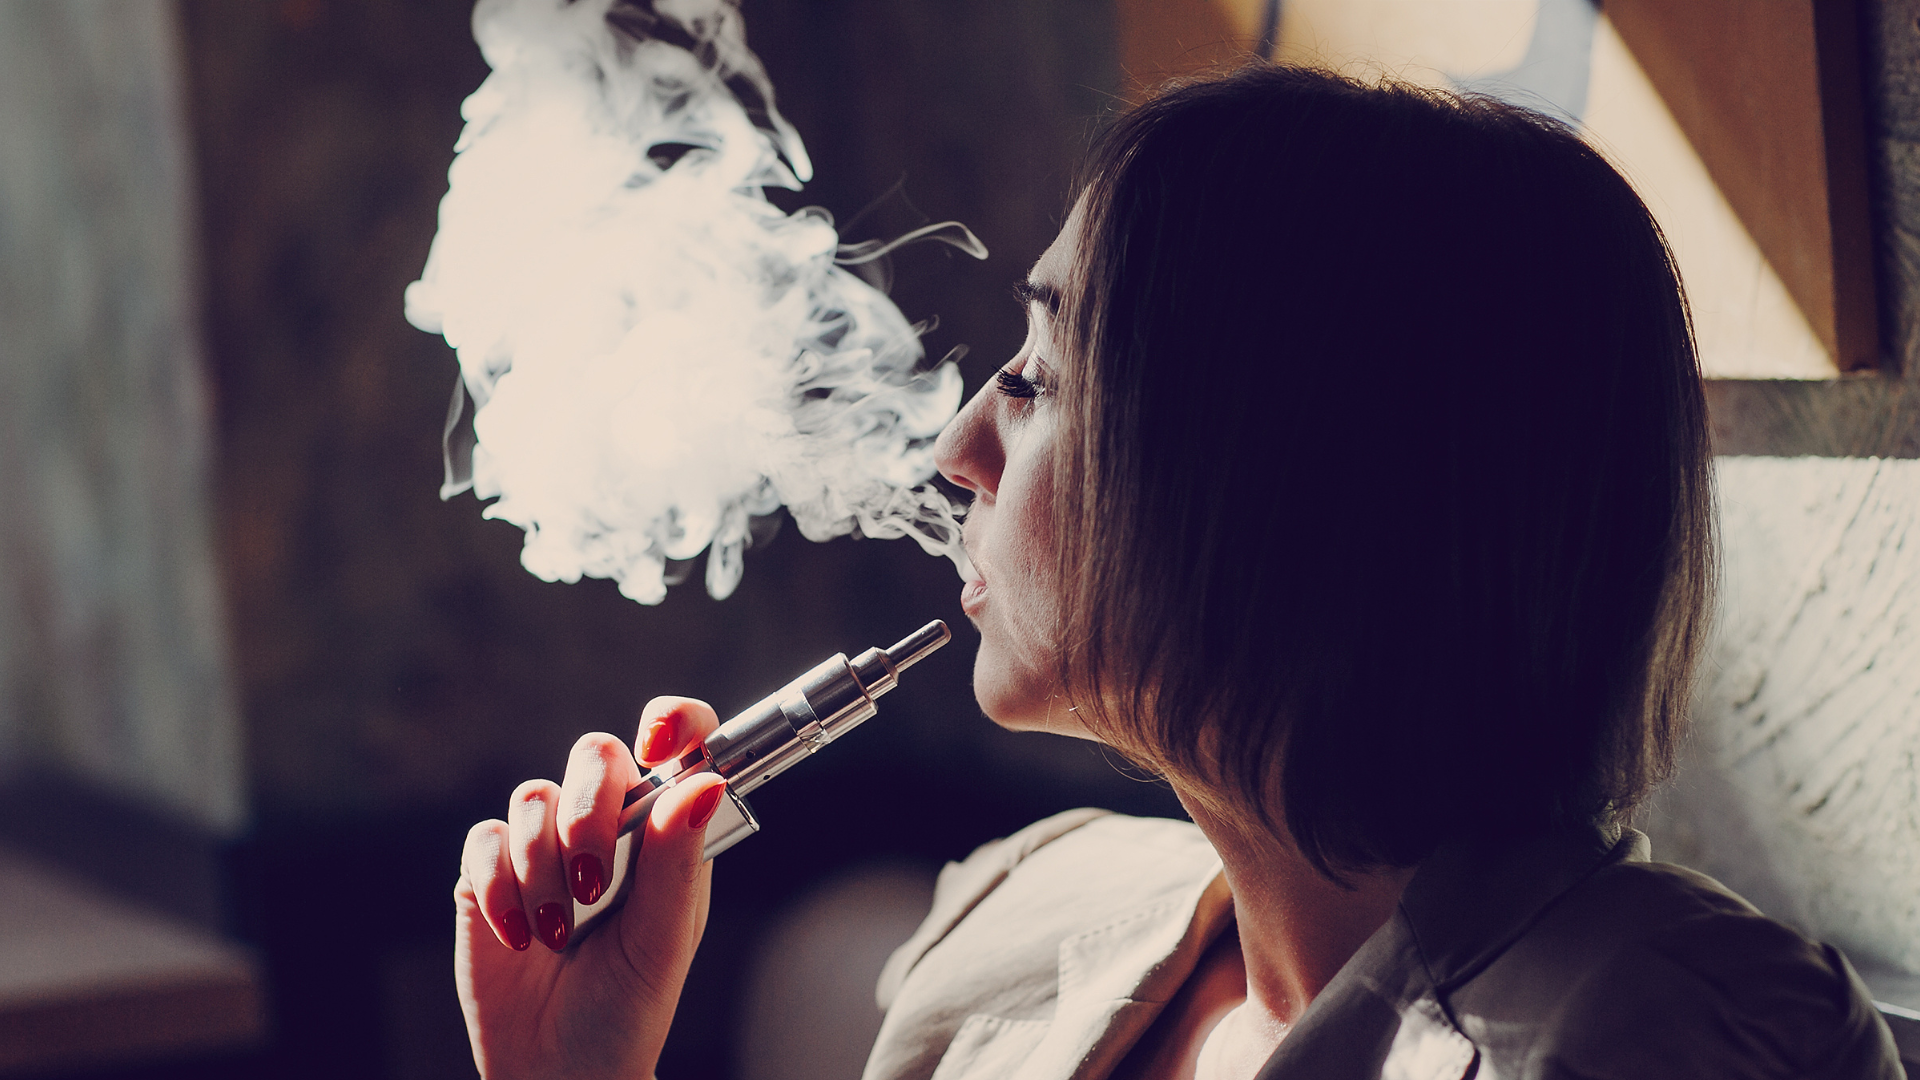 Fumantes de vape têm maior risco de desenvolver câncer de pulmão, diz estudo